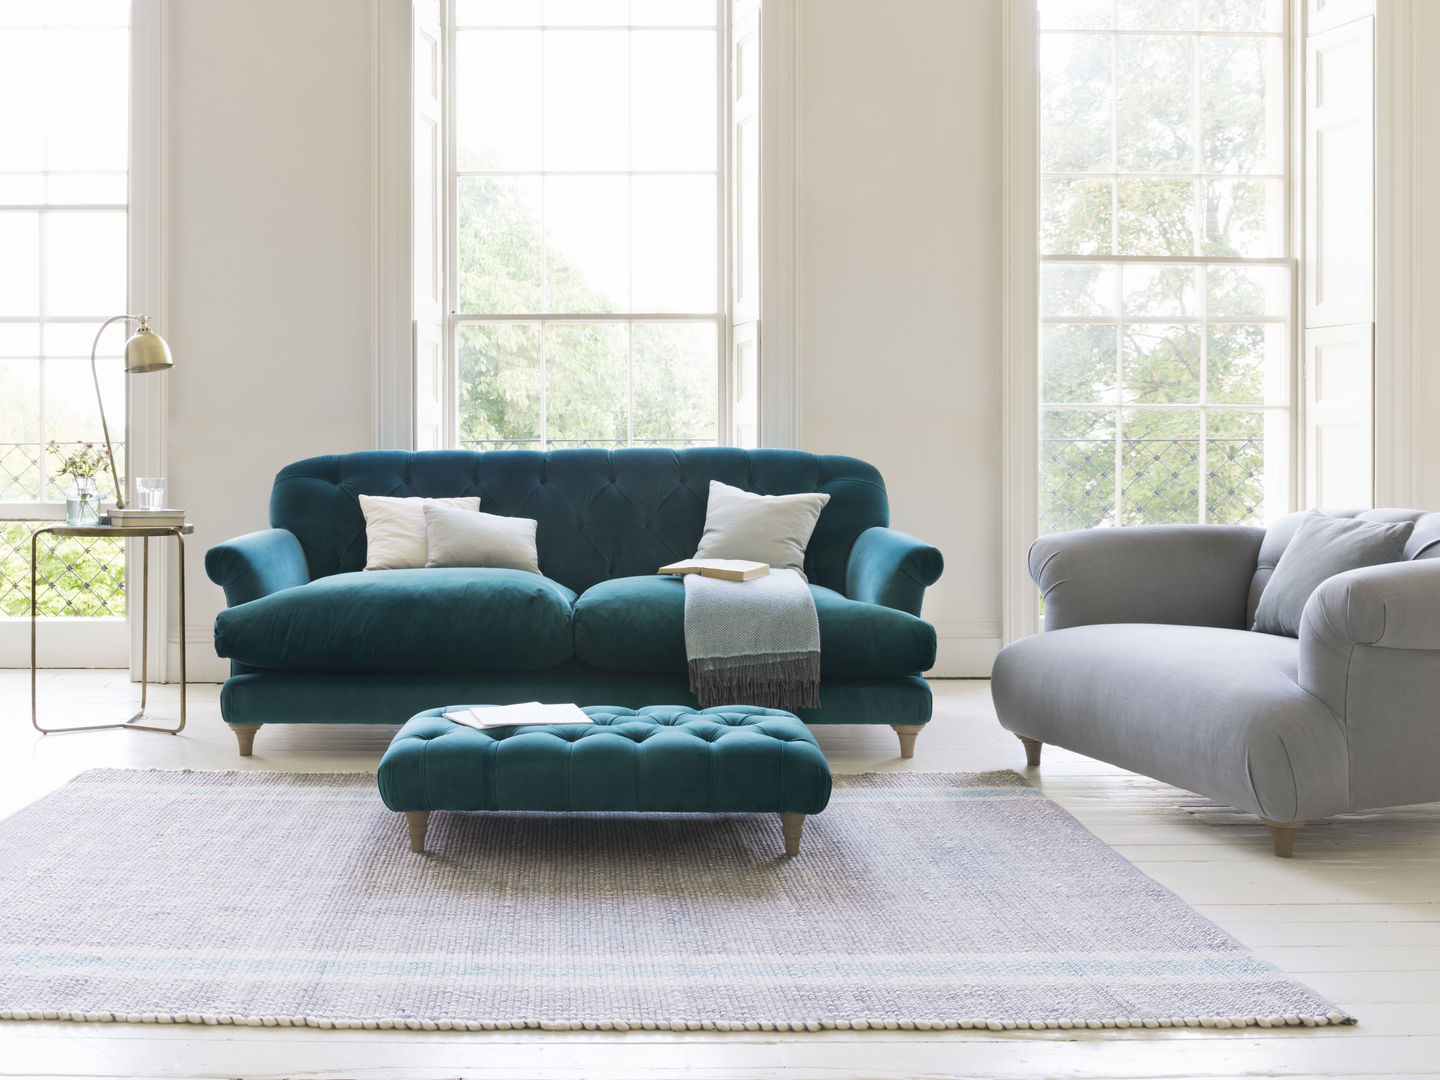 Comfty footstool Loaf Moderne Wohnzimmer footstool,teal,living room,sofa,space,windows,blue,velvet,green